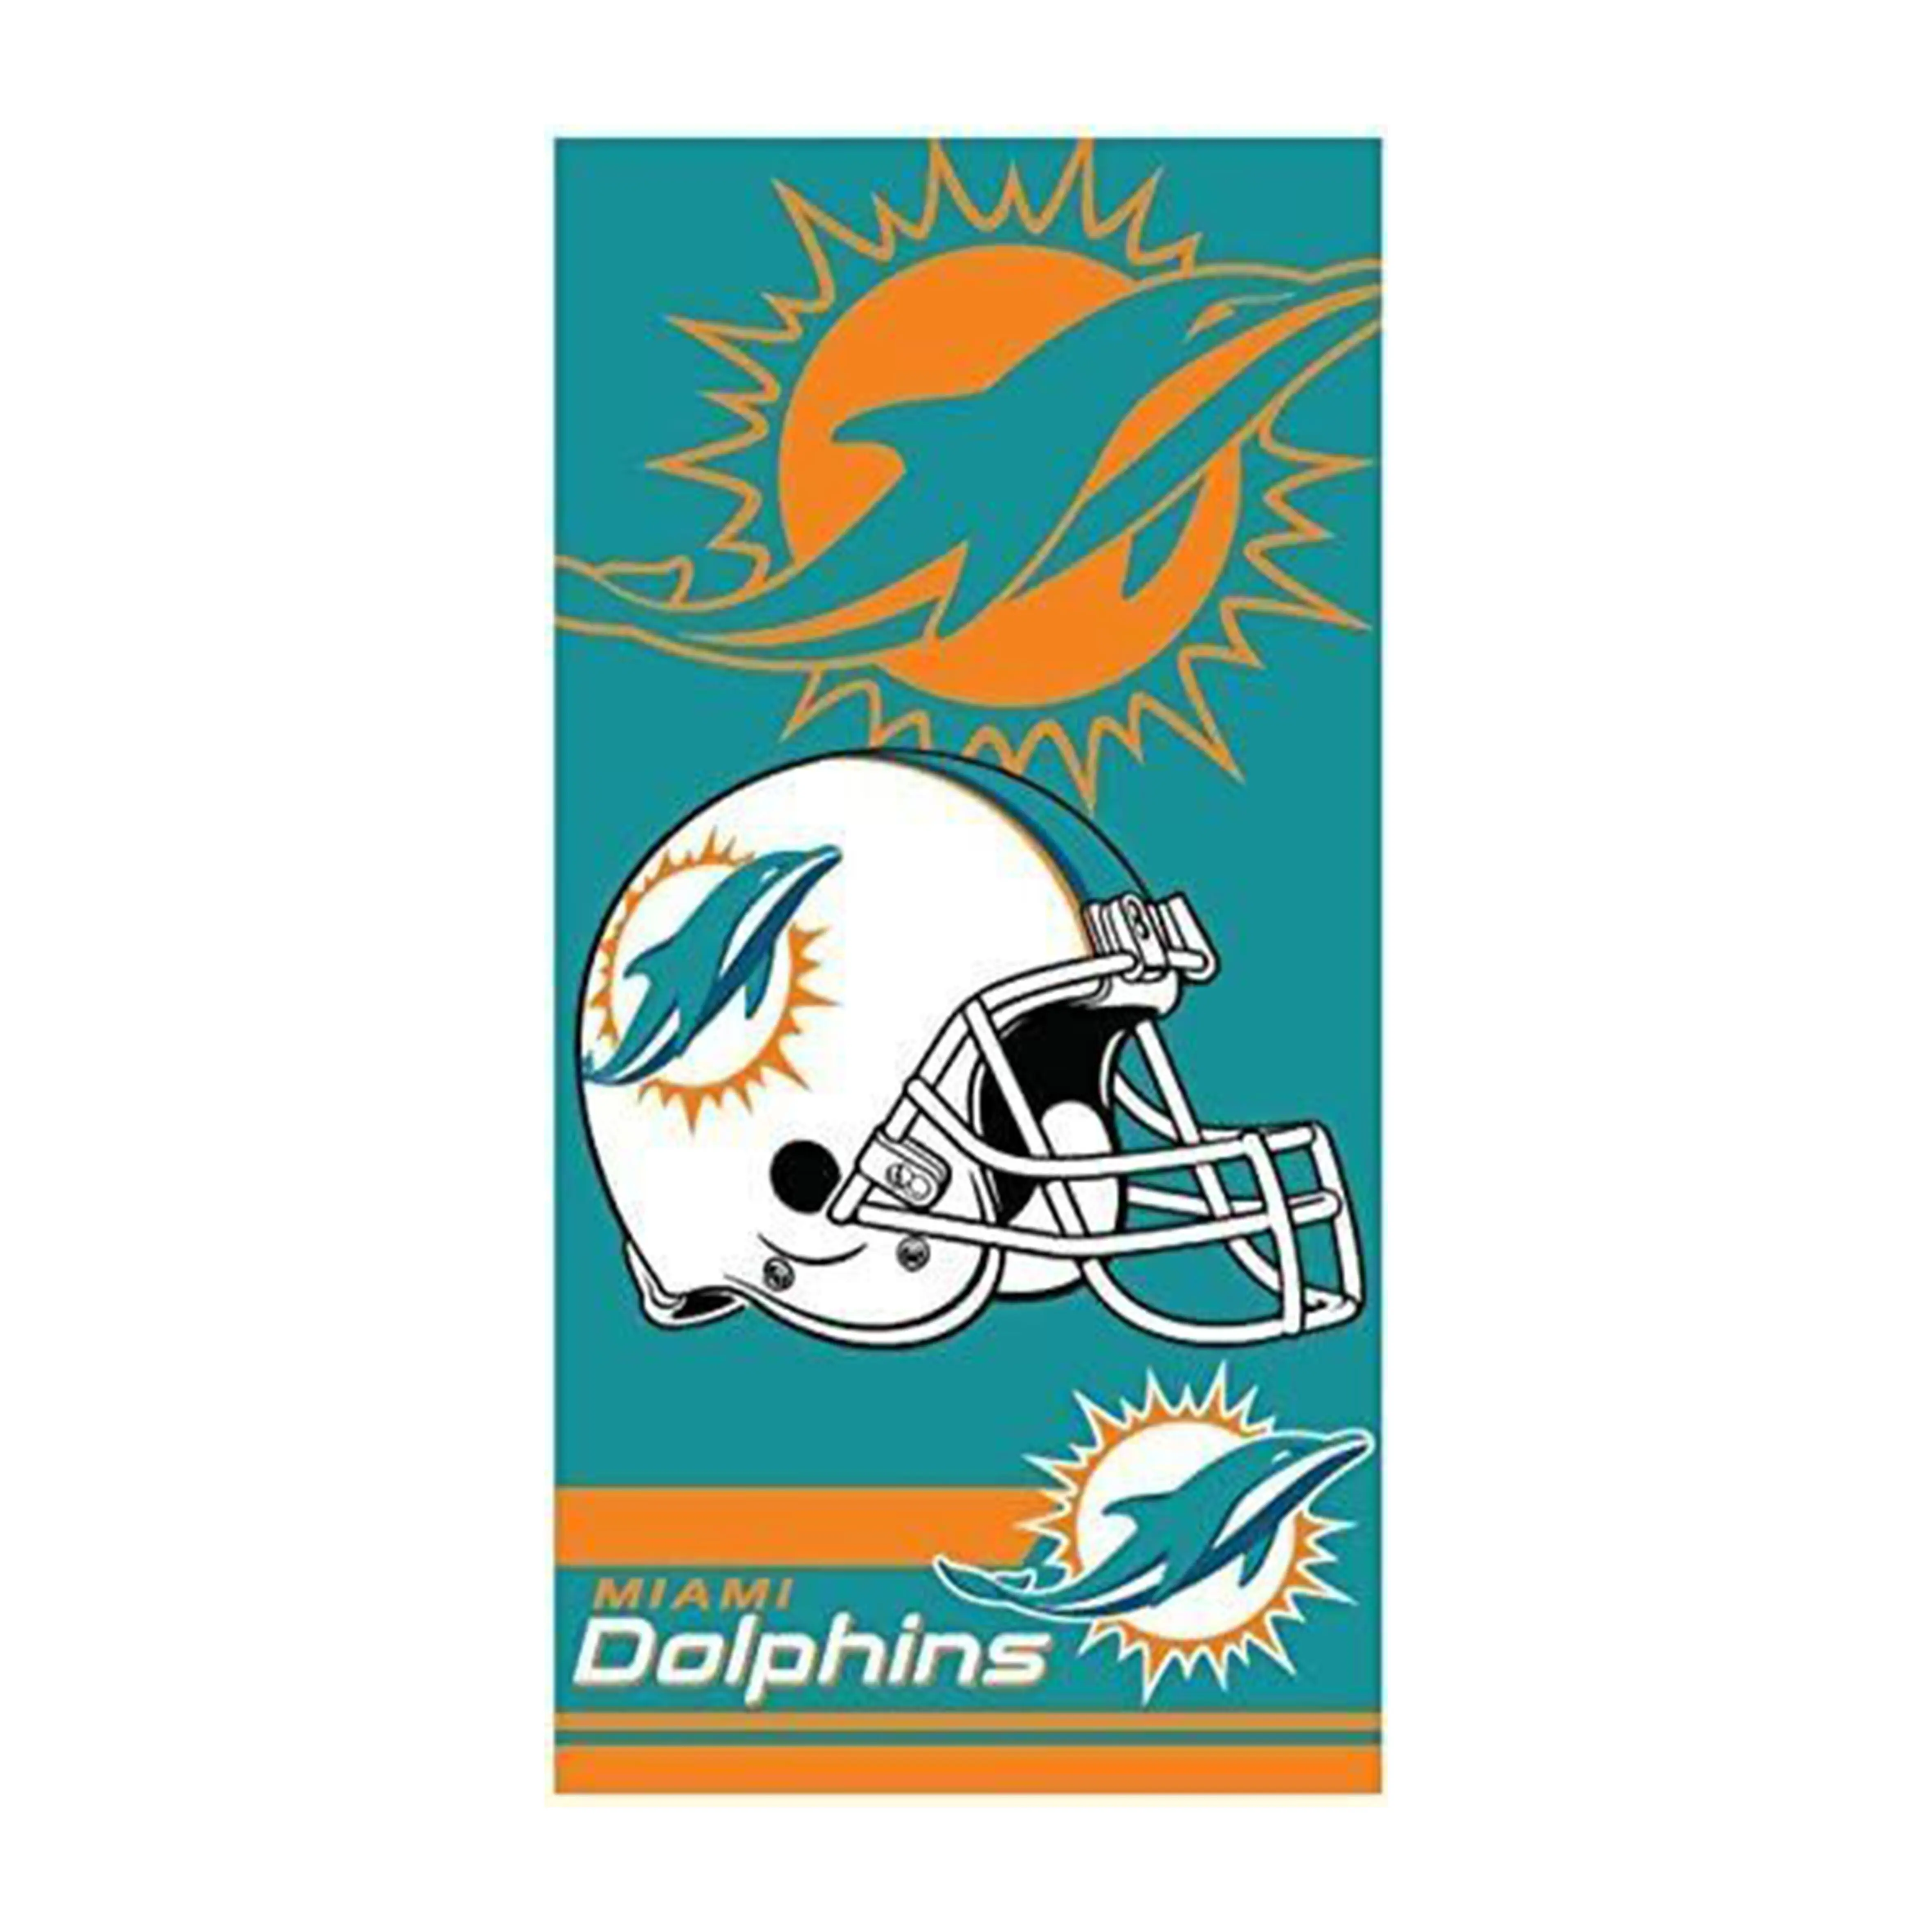 Buena calidad Fabricación al por mayor NFL Toalla de playa Miami Dolphins Multi Color 30 pulgadas x 60 pulgadas Toallas de playa